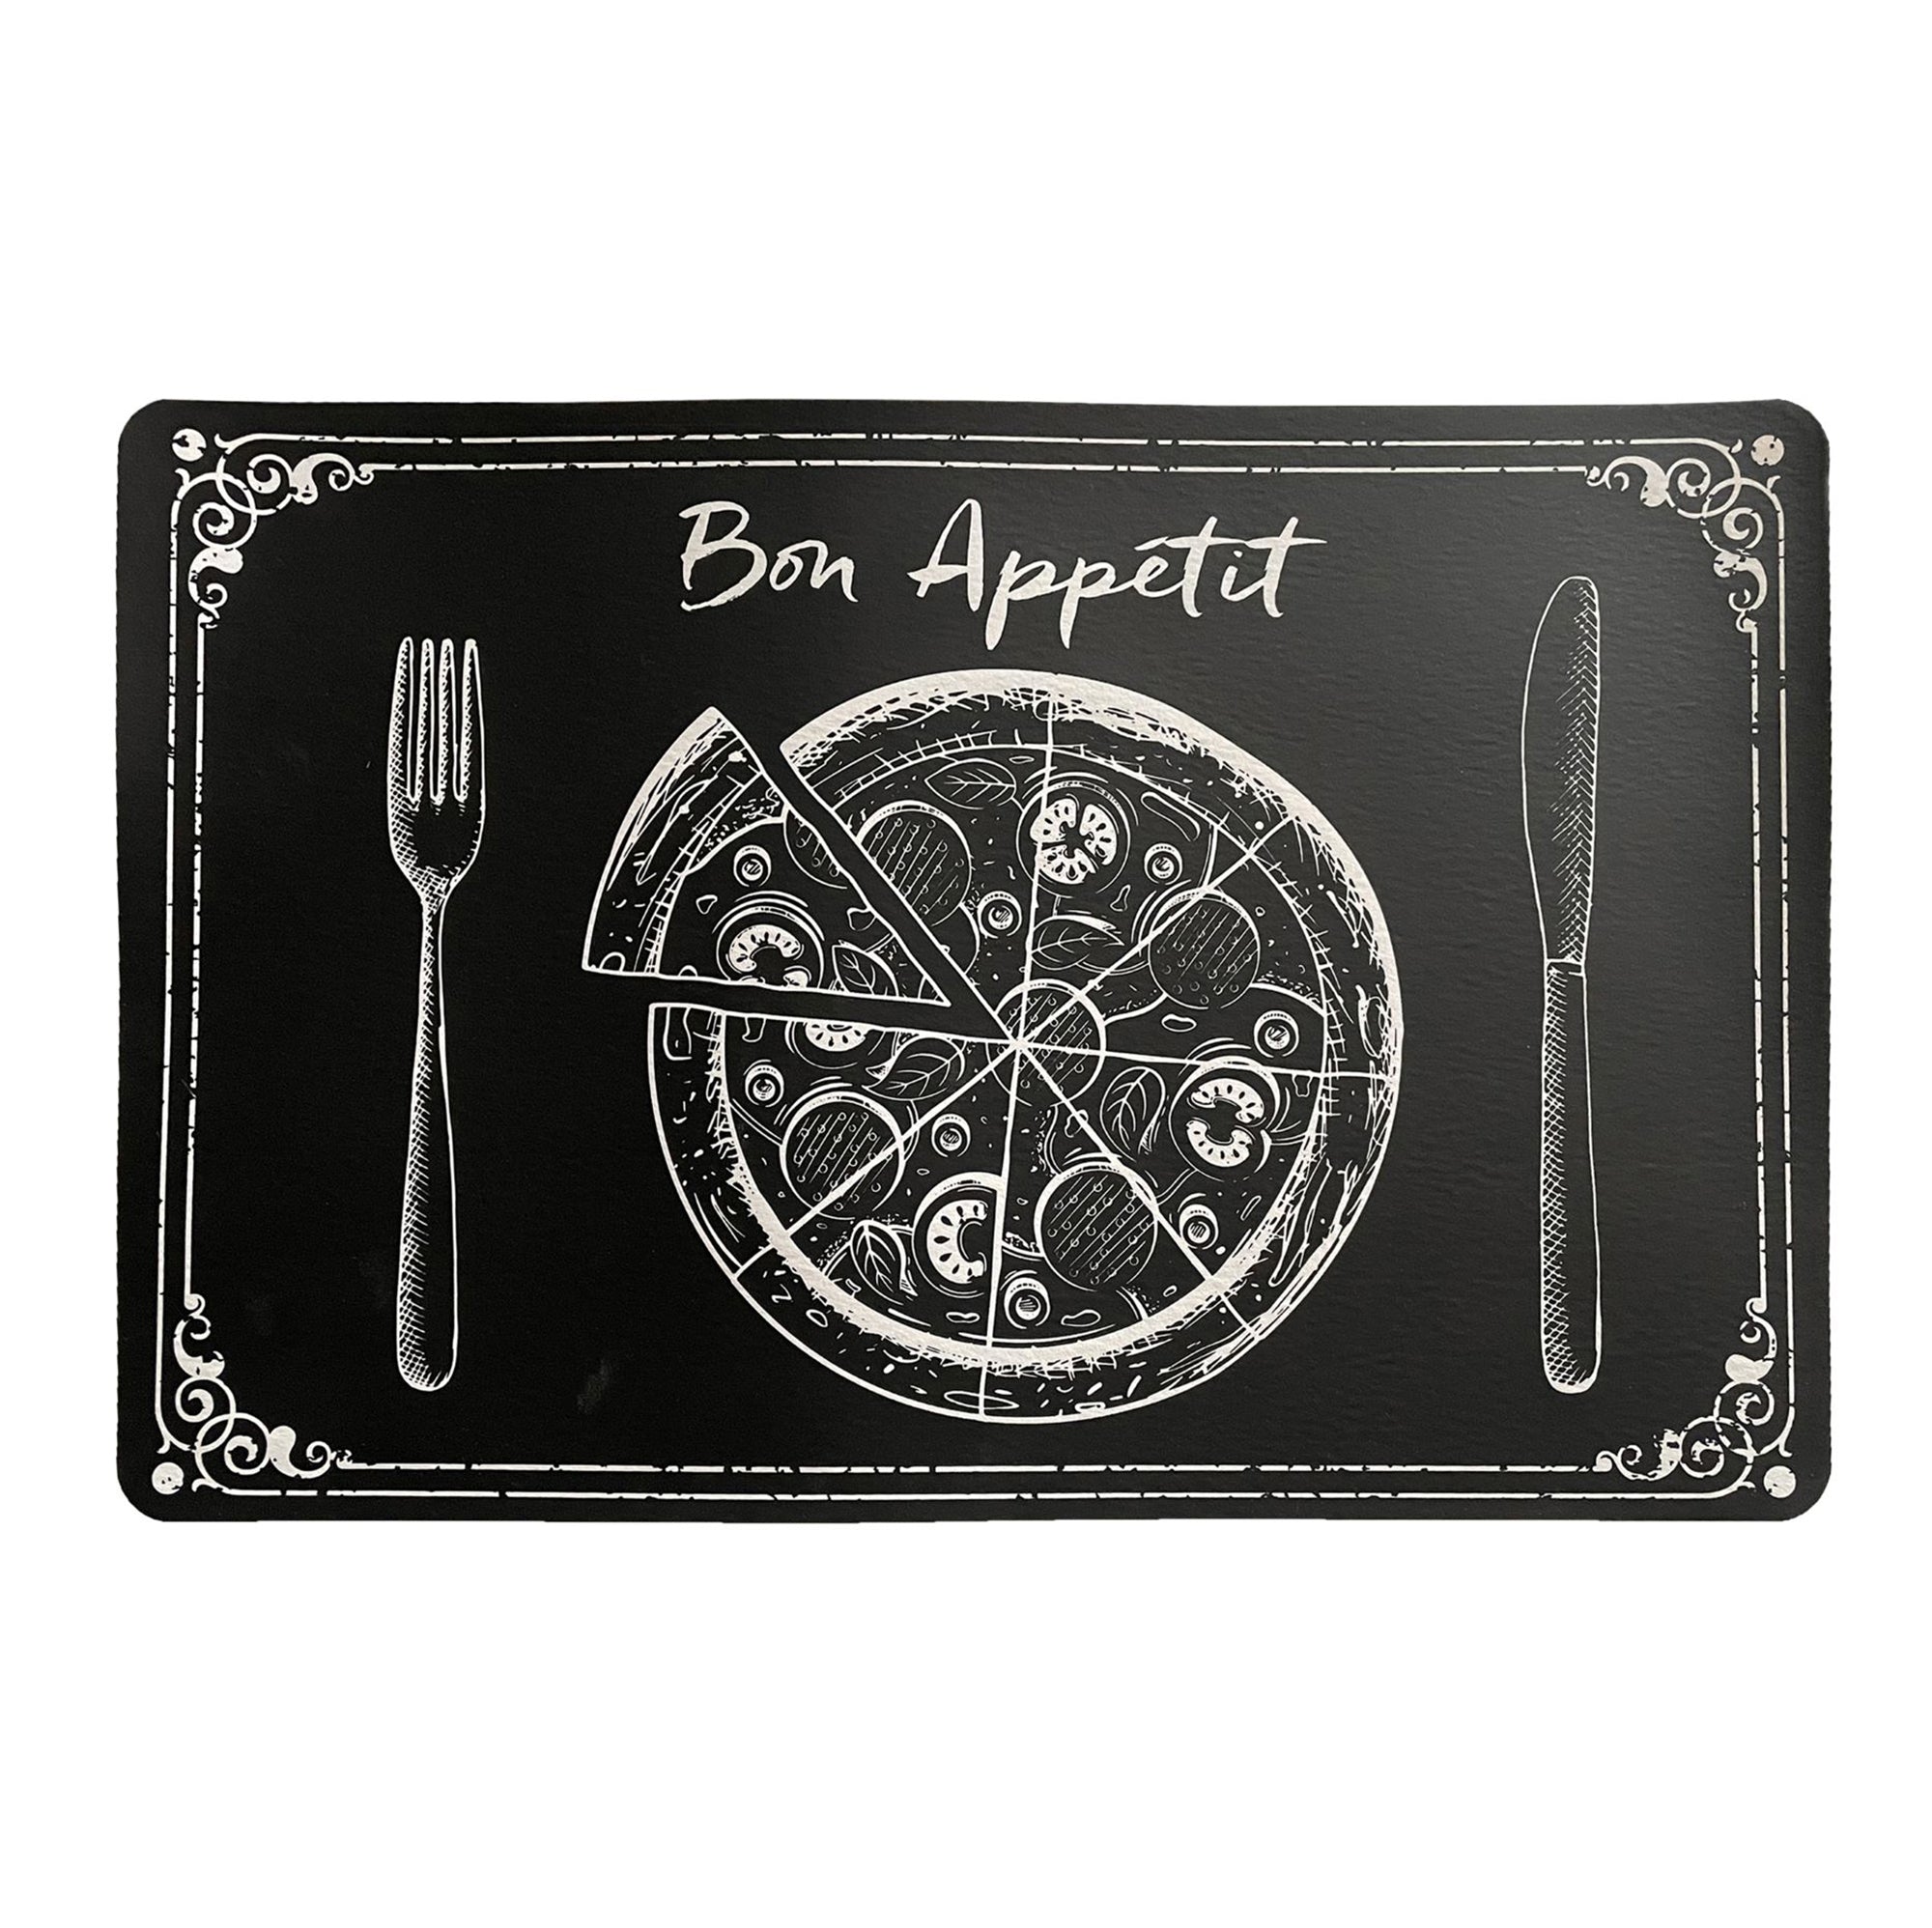 Bon Appétit PVC Printed Black Placemat 17x11.2in